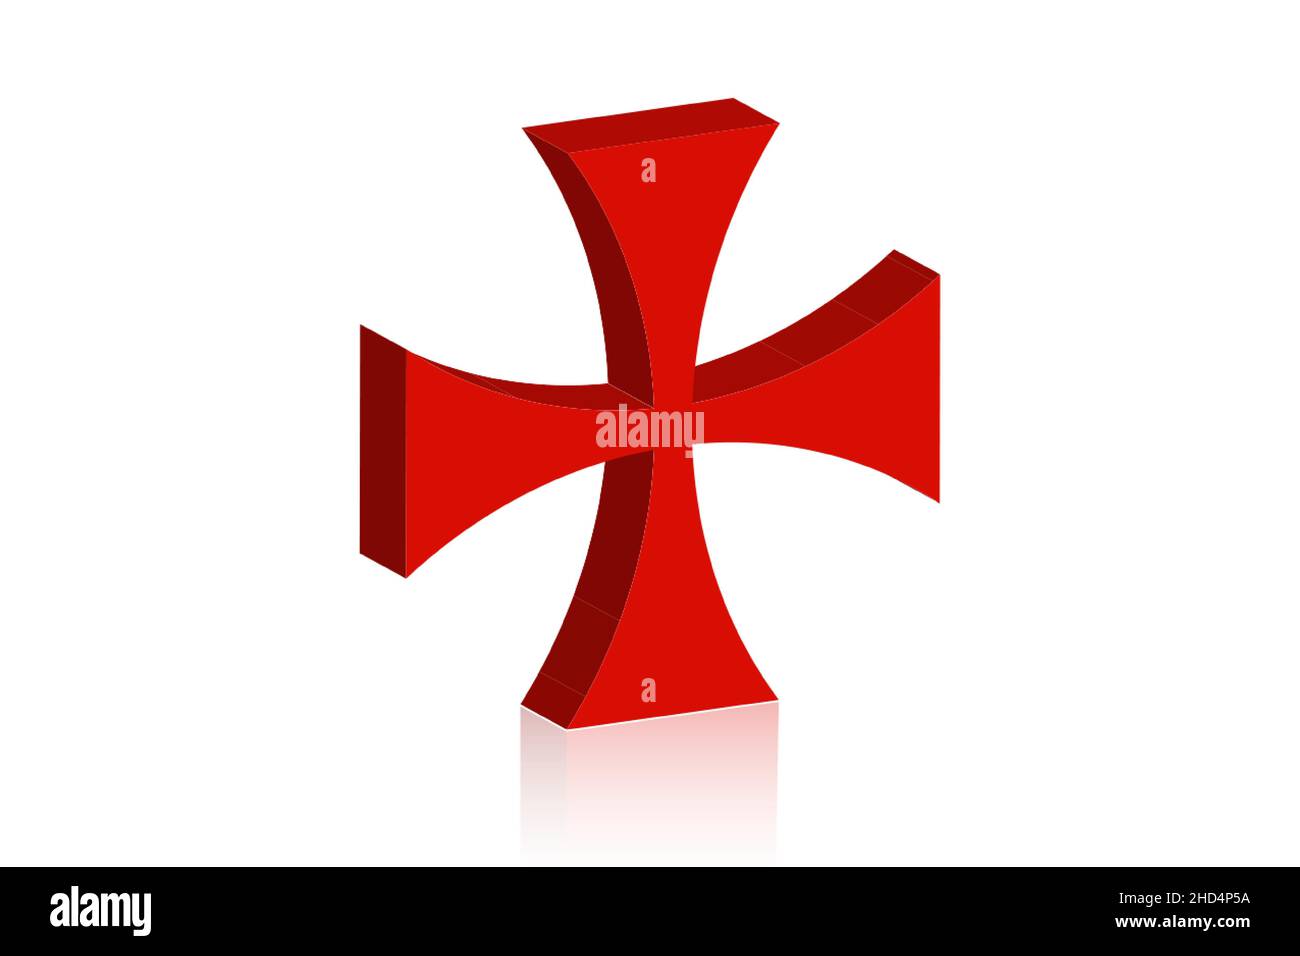 3D Templerkreuz. Patea Kreuz rotes Symbol des Templerordens. Geistlicher Ritterordens, der 1119 im Heiligen Land gegründet wurde. Vektor isoliert auf w Stock Vektor